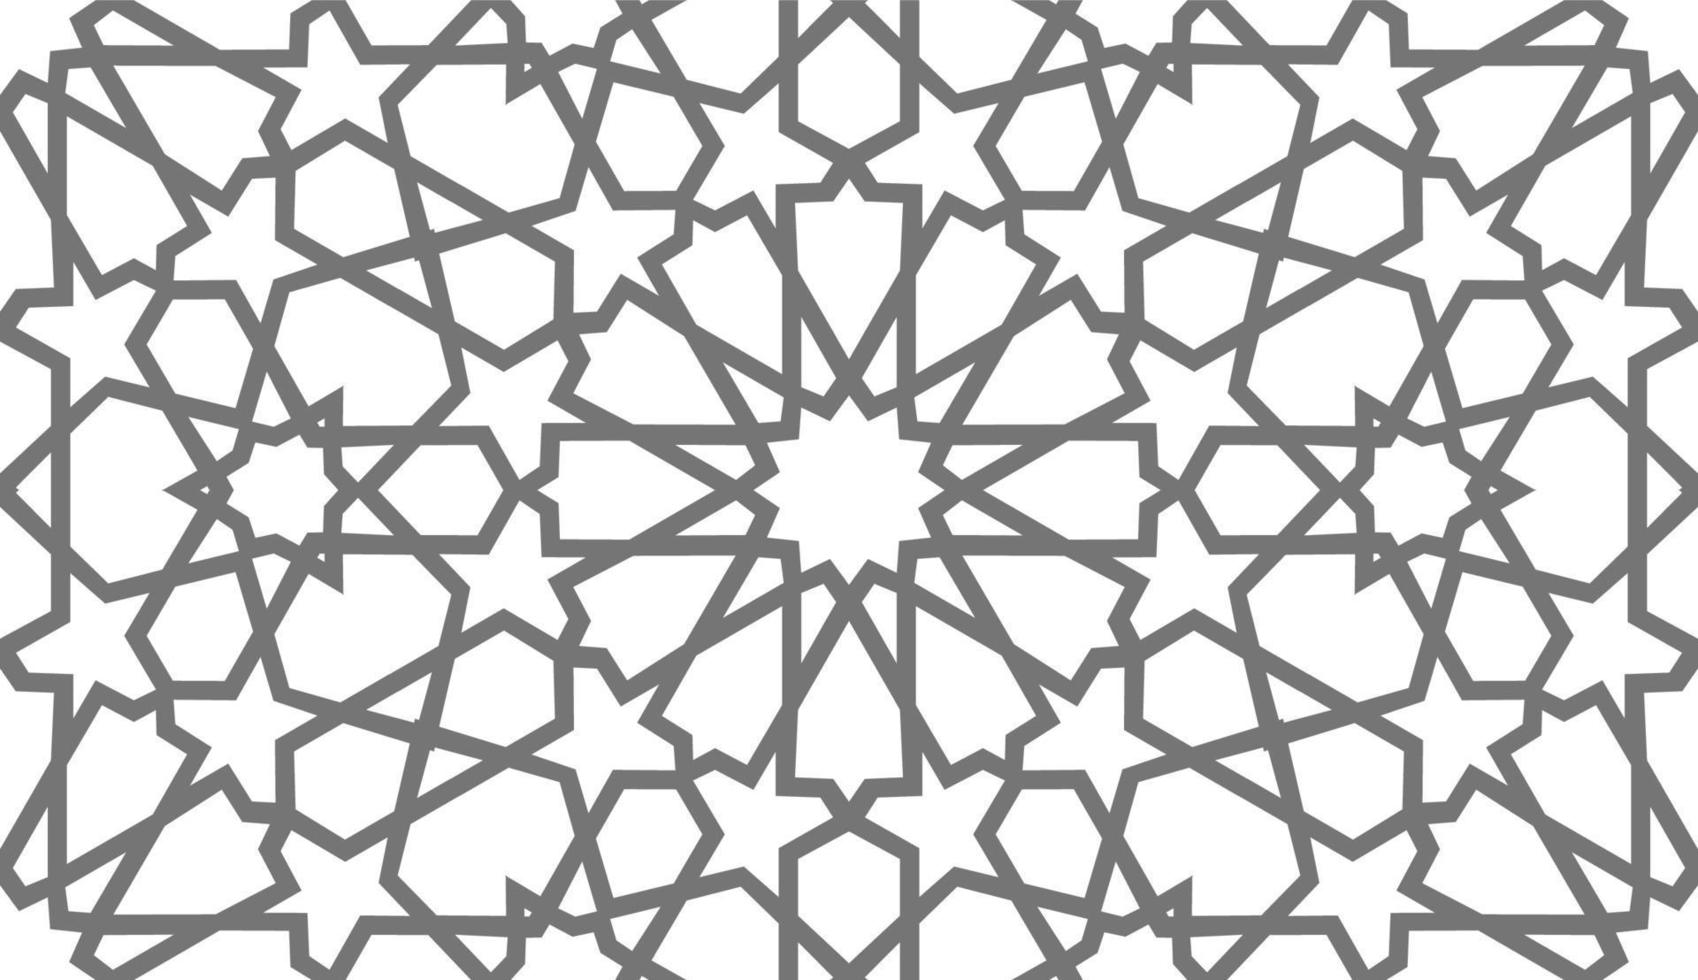 patrón árabe ramadan mubarak patrón de estrella musulmana simple. diseño cuadrado de flores. fondo de patrón islámico. patrón de círculo vector de flores islámicas.